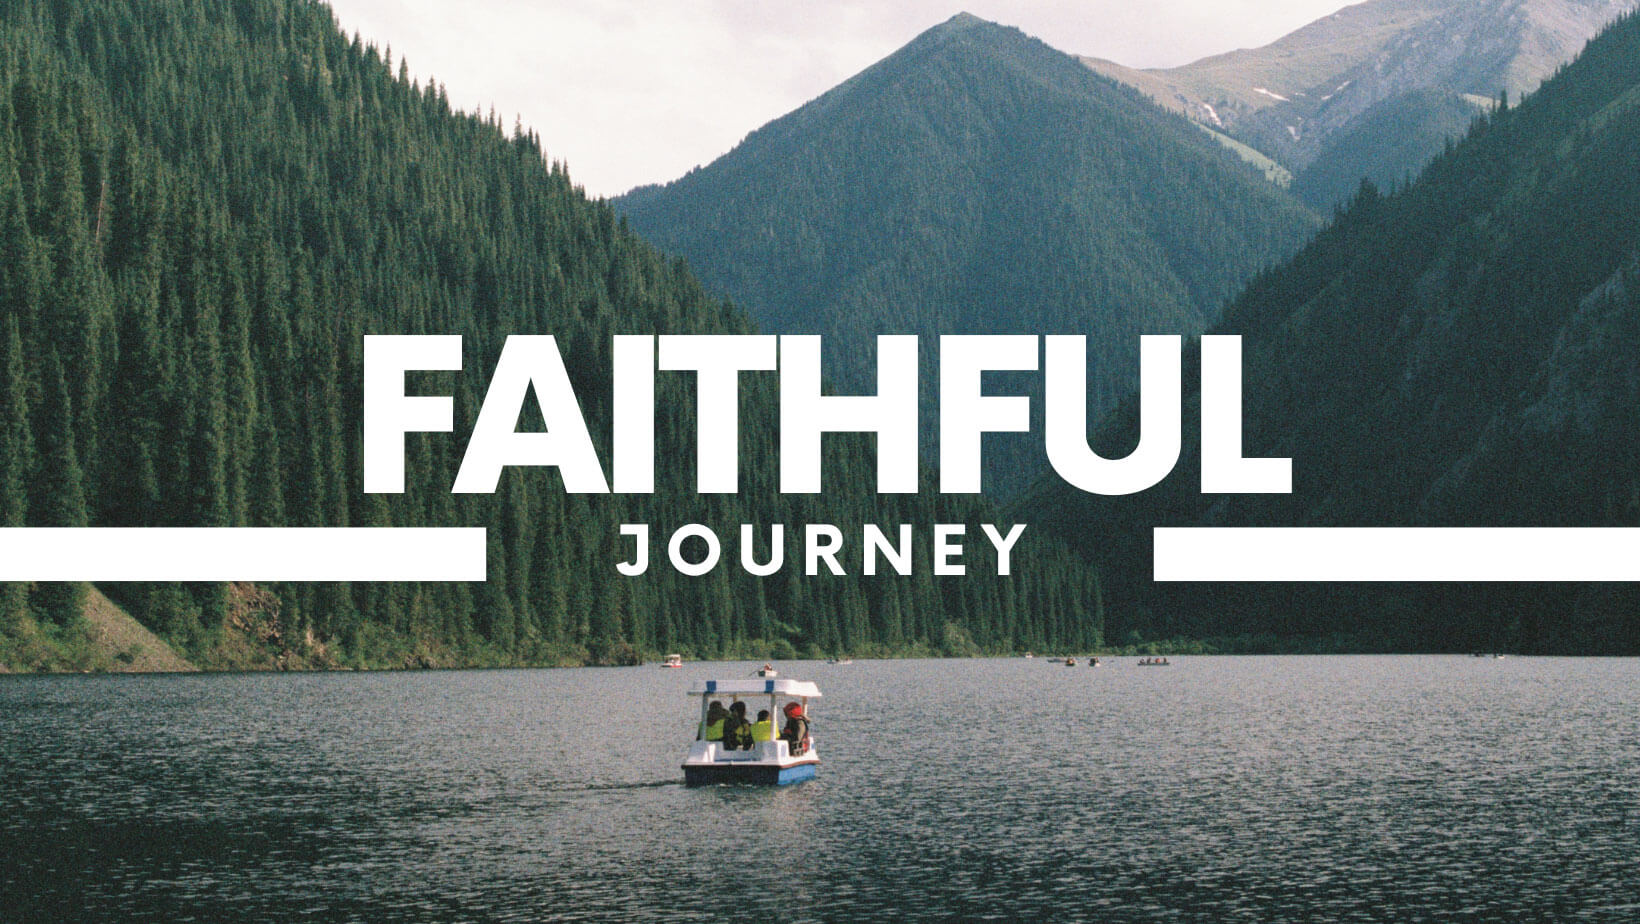 faithful journey